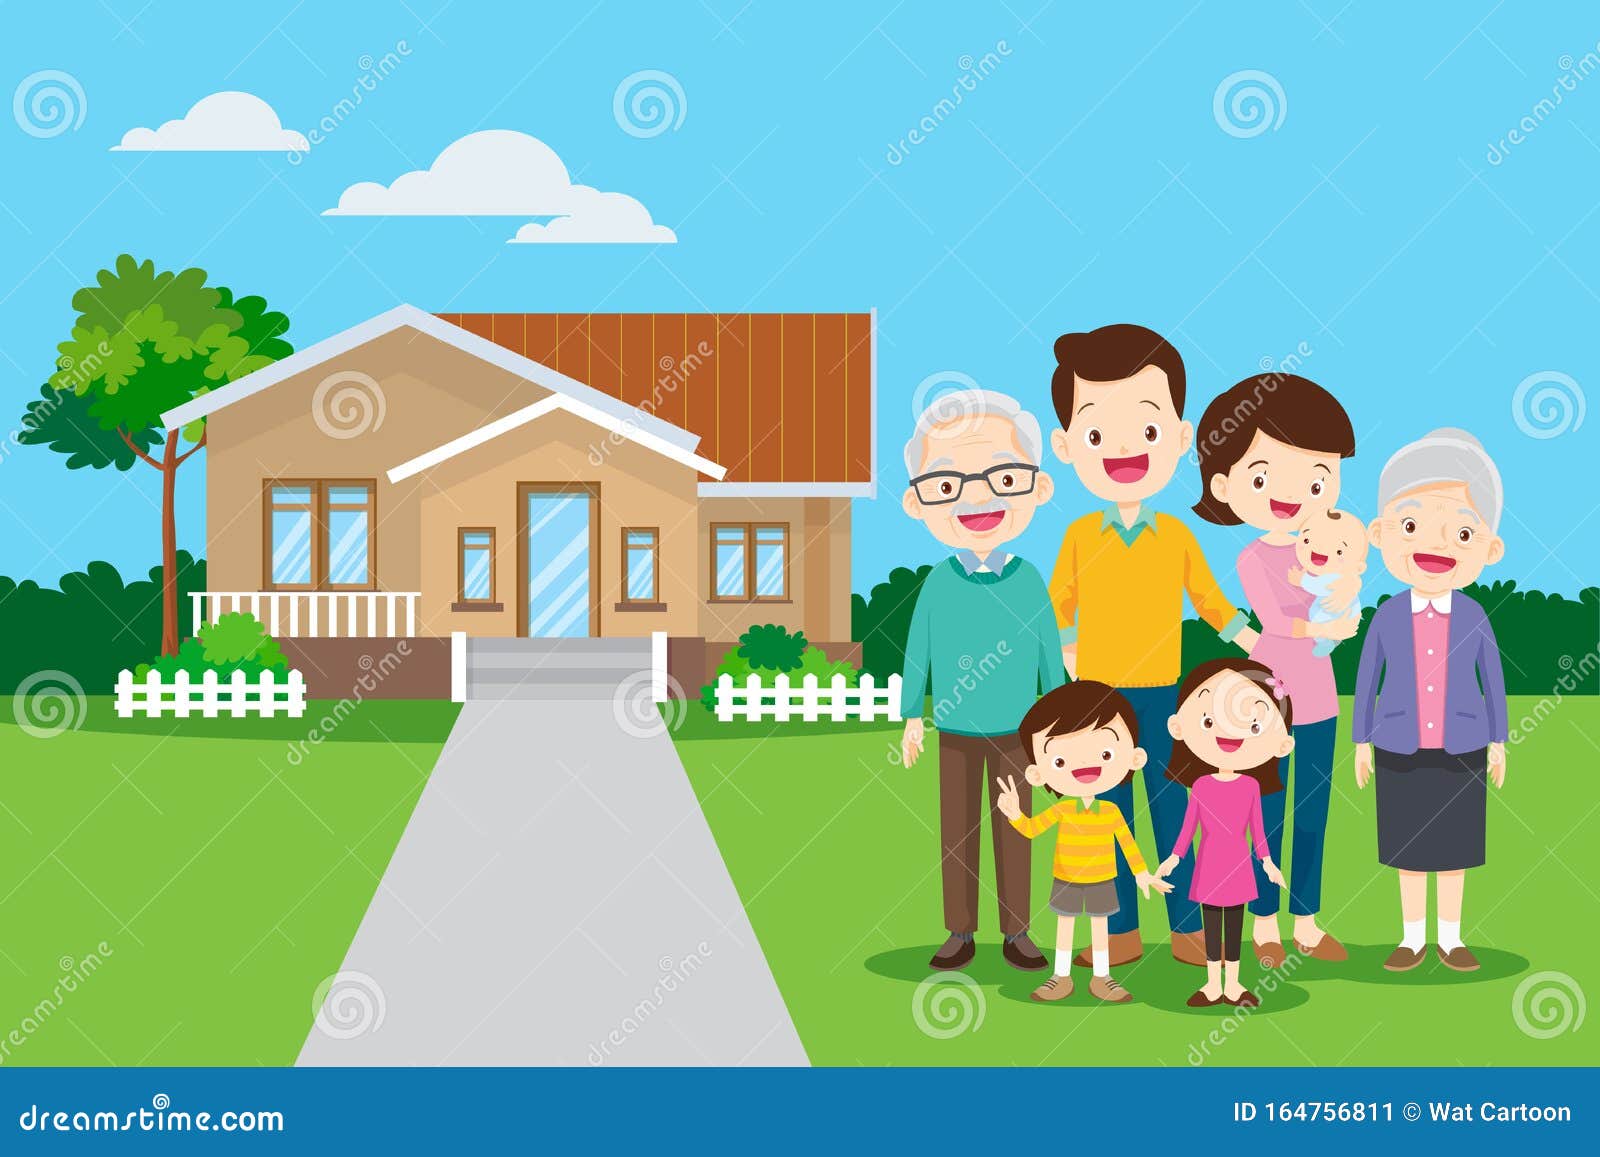 他们家背景中的大家庭向量例证 插画包括有祖父项 字符 重婚 采购 女性 逗人喜爱 前面